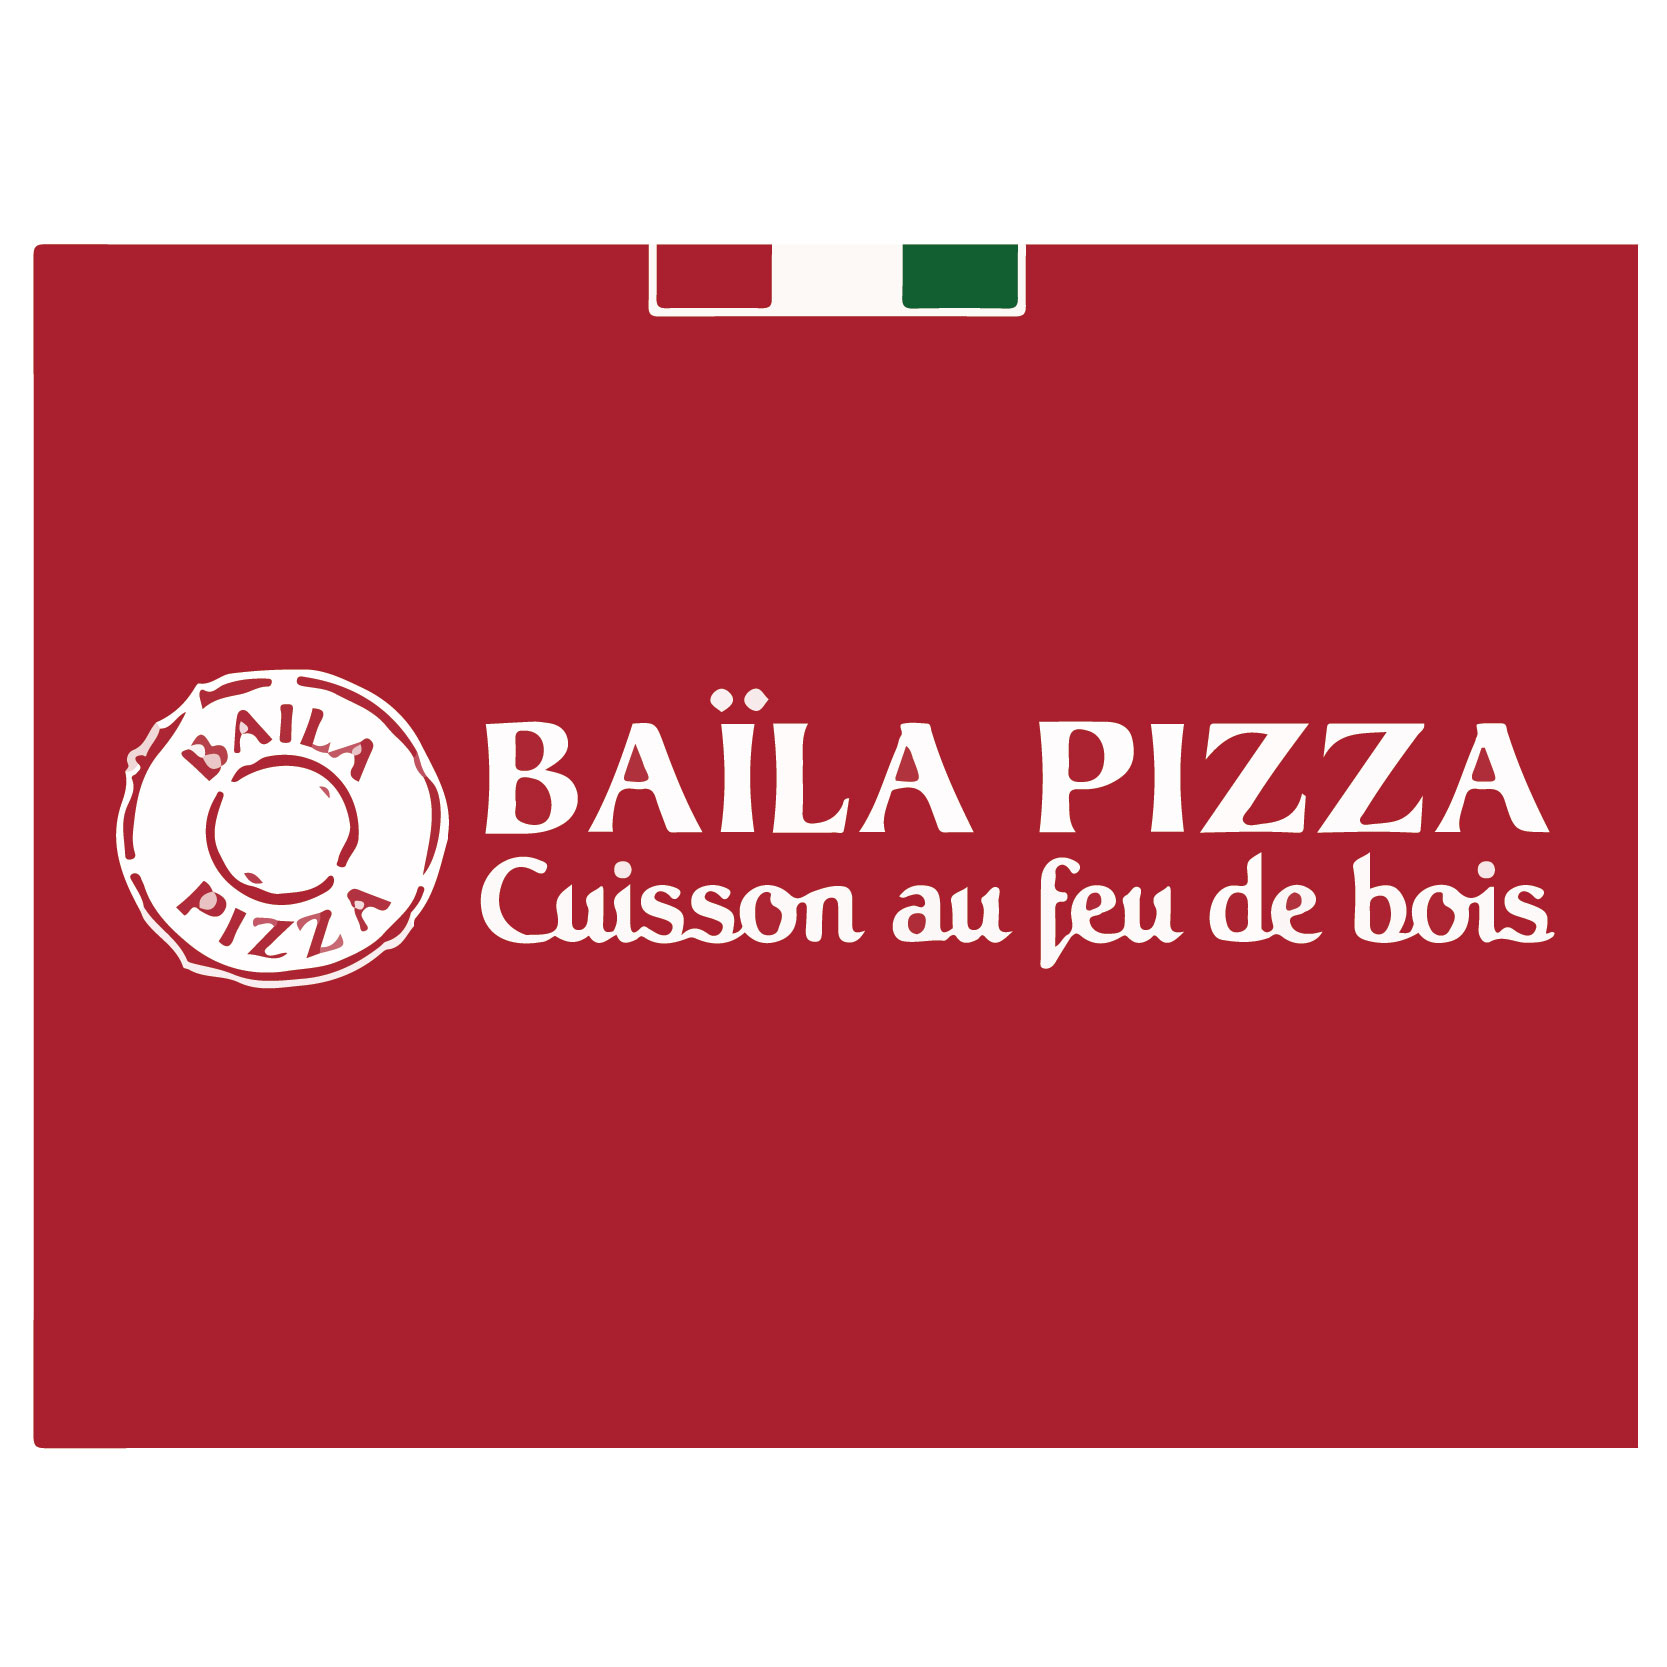 BAILA PIZZA